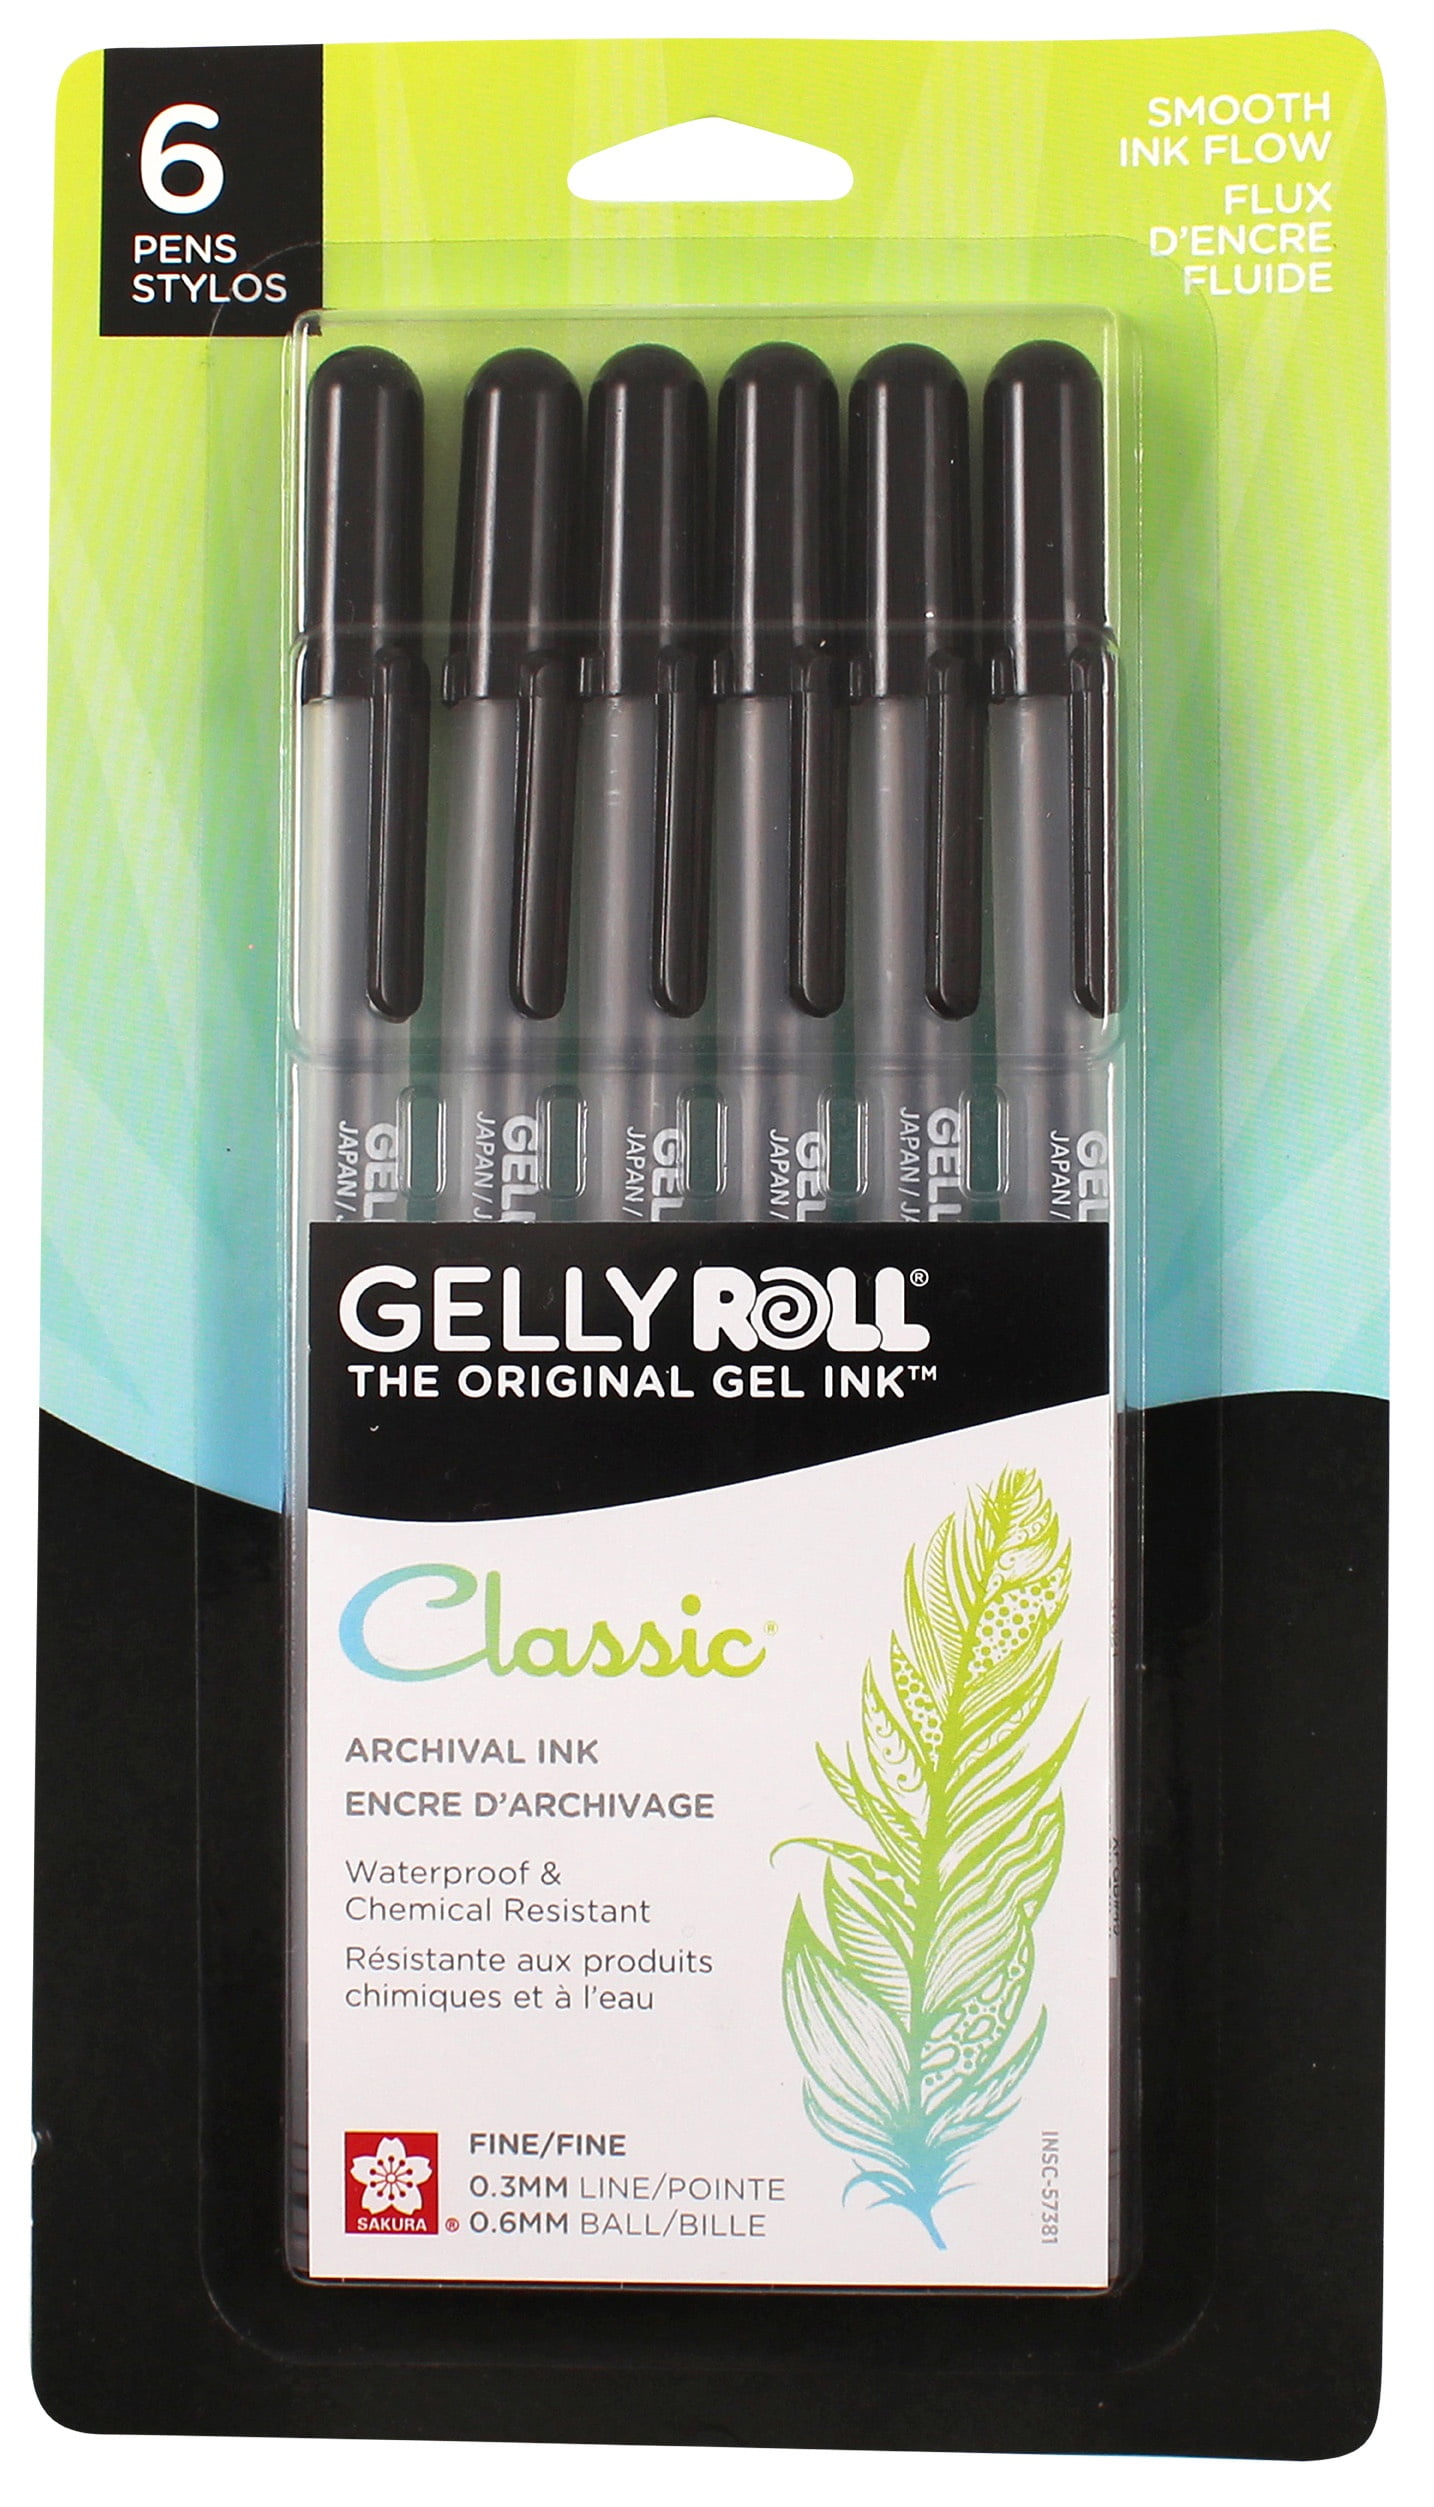 Sakura Gelly Roll Classic Gel Pen - Japanese Kawaii Pen Shop